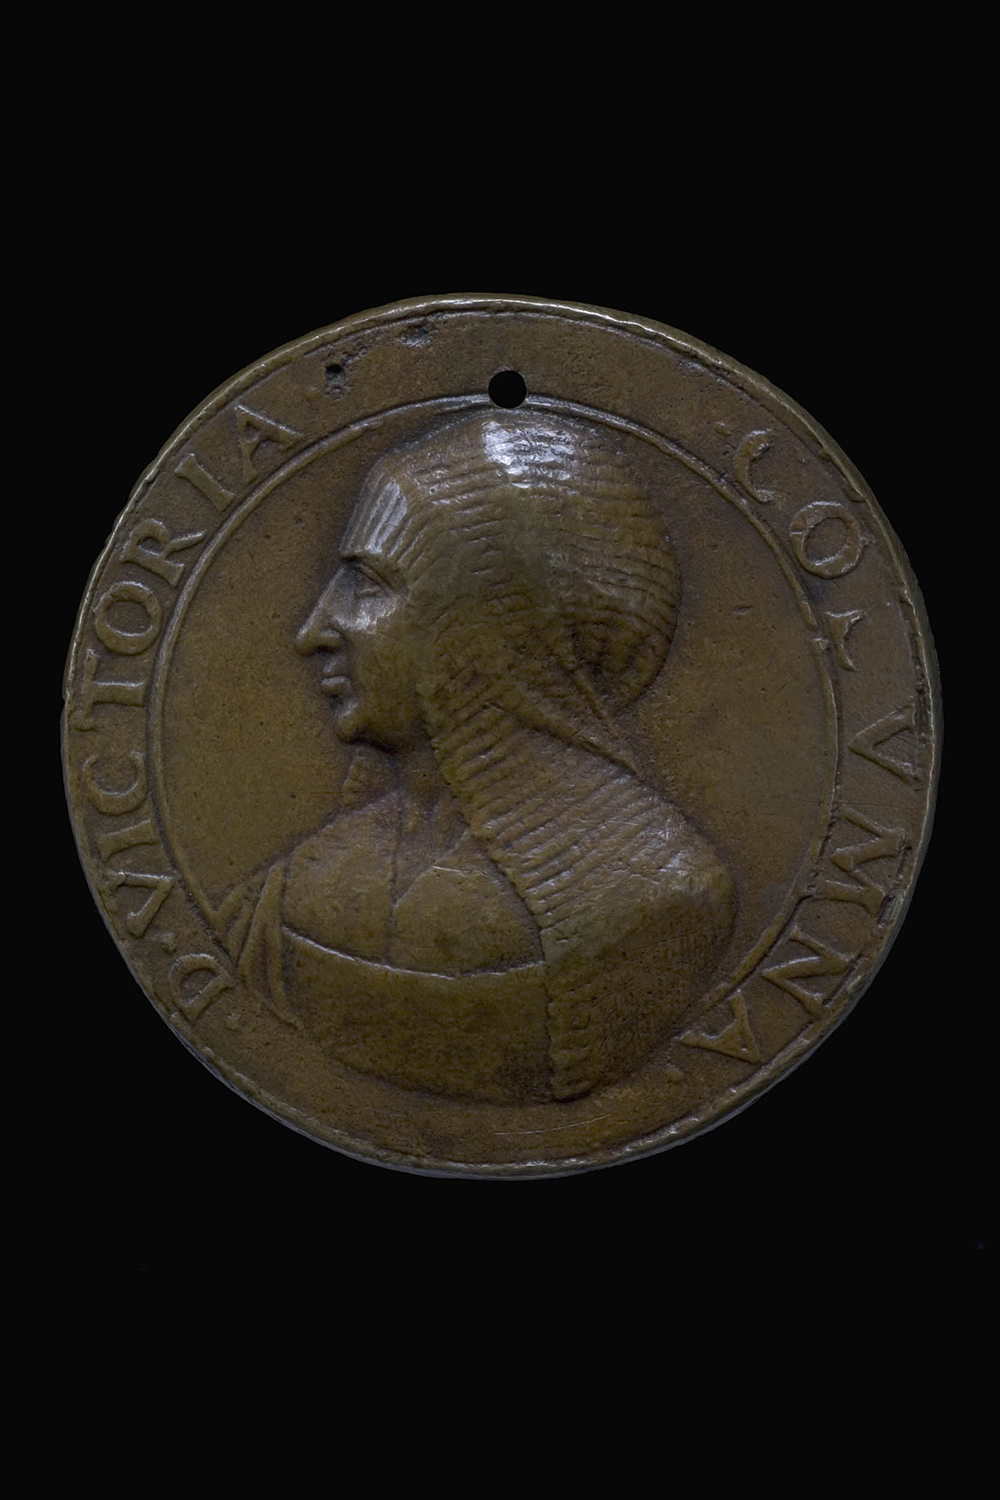 Vittoria Colonna medal, c. 1540. The British Museum.